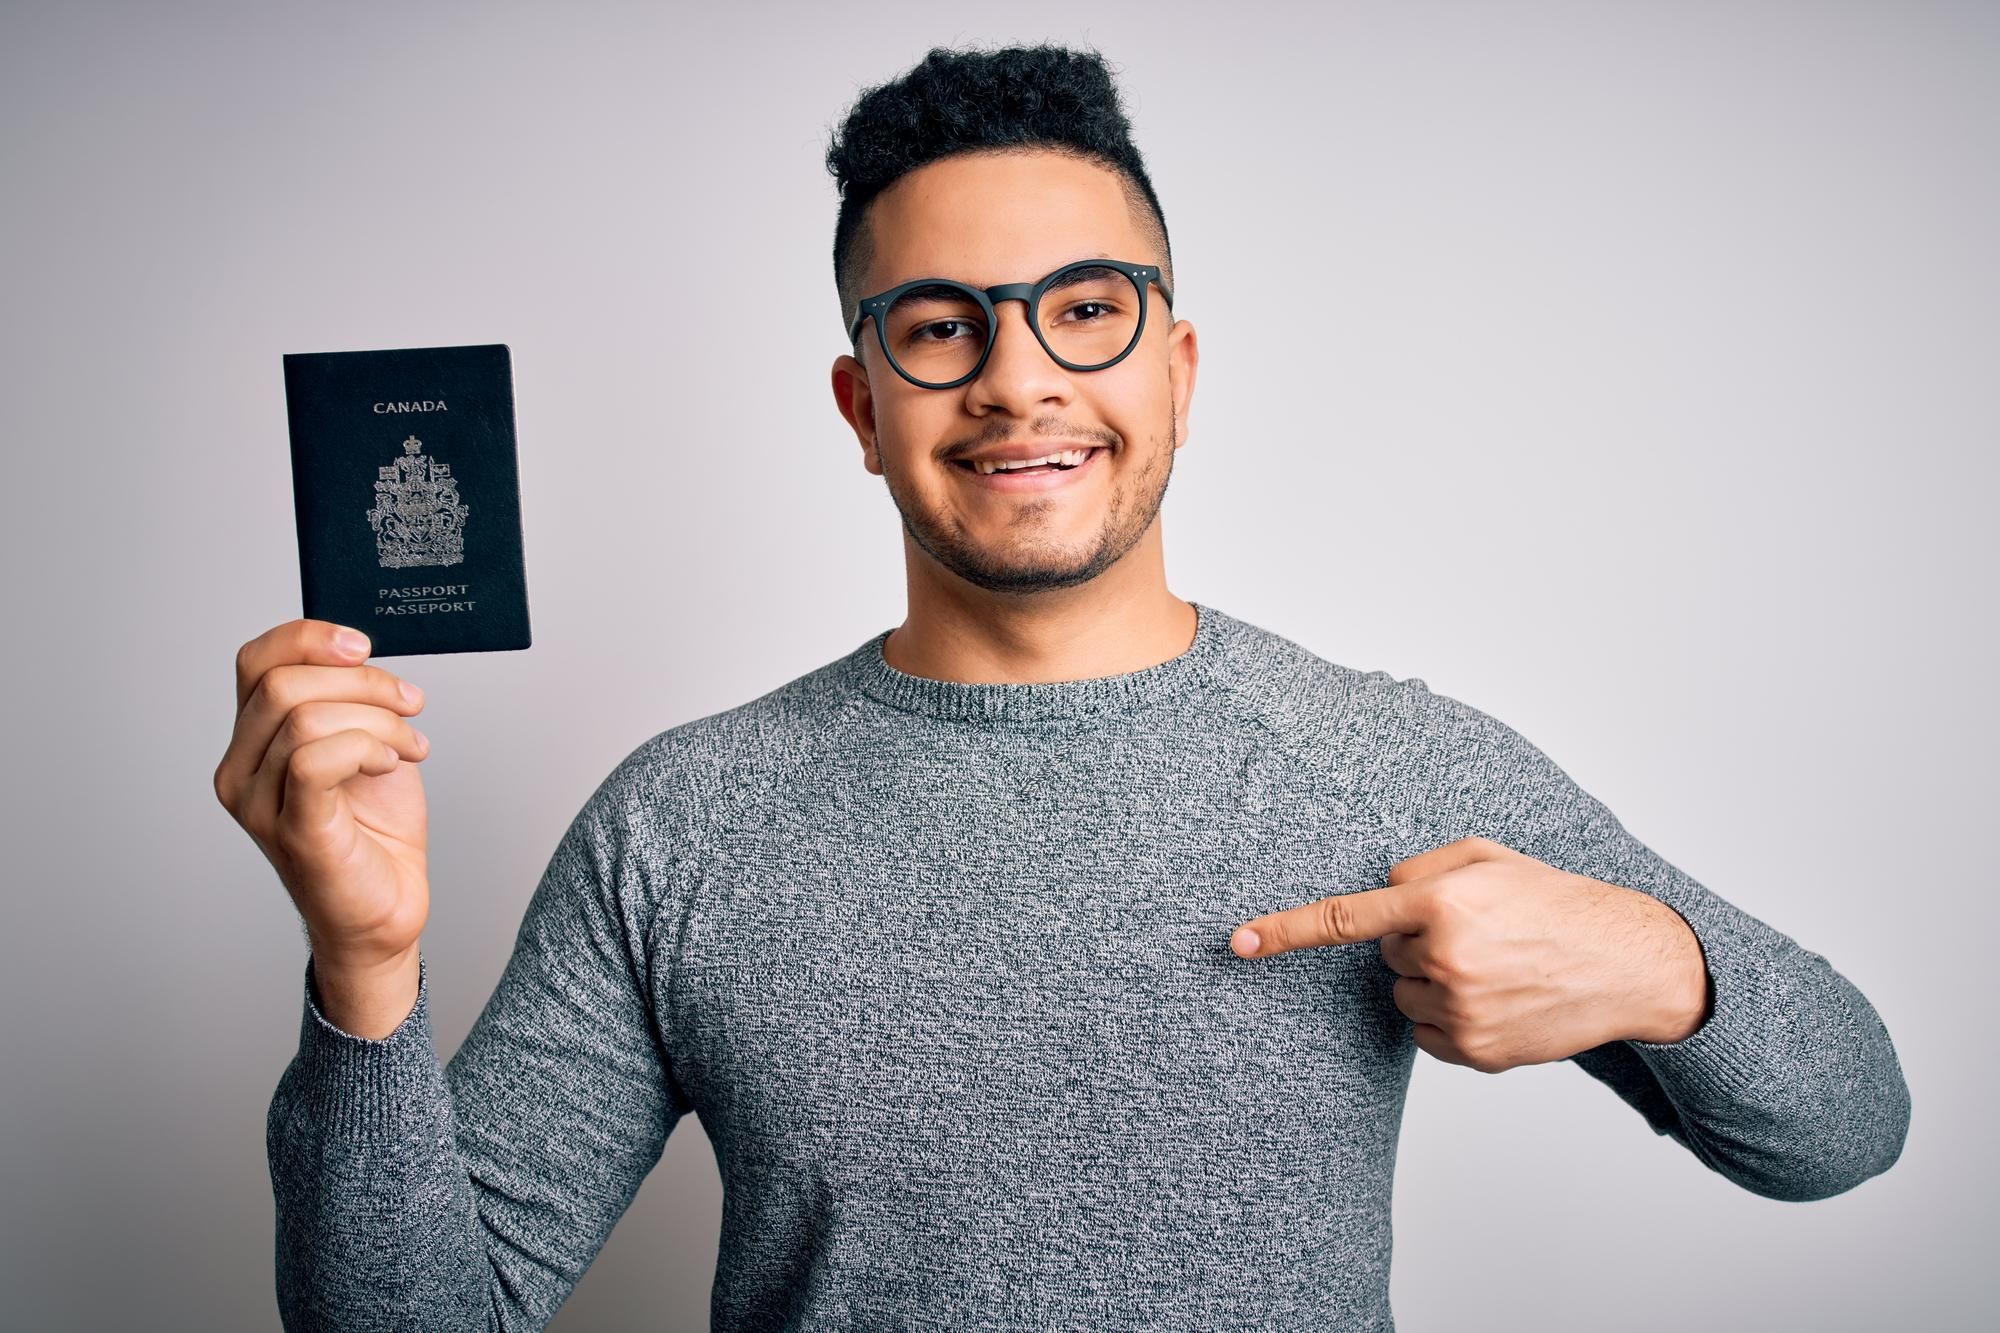 UK digital passport photo